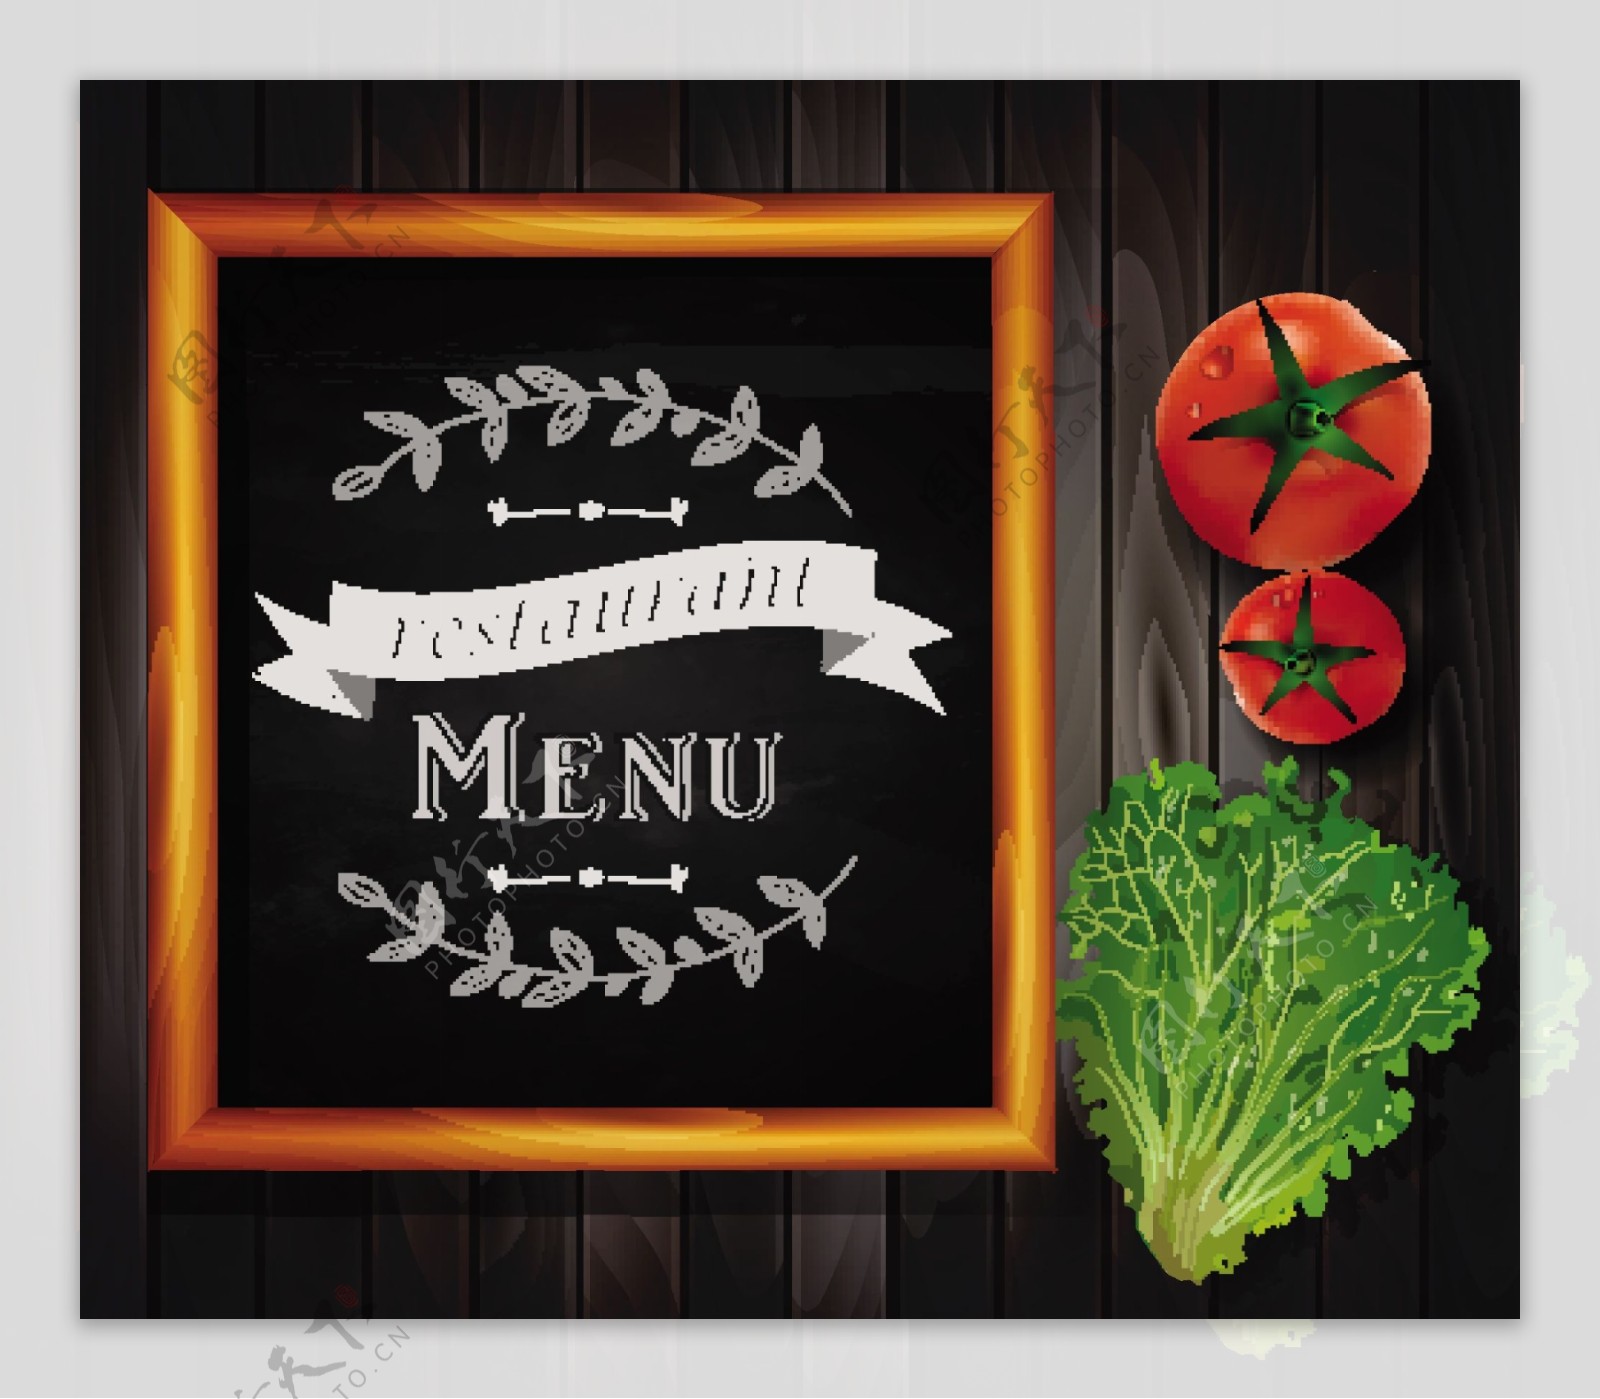 新鲜蔬菜和黑板菜单矢量